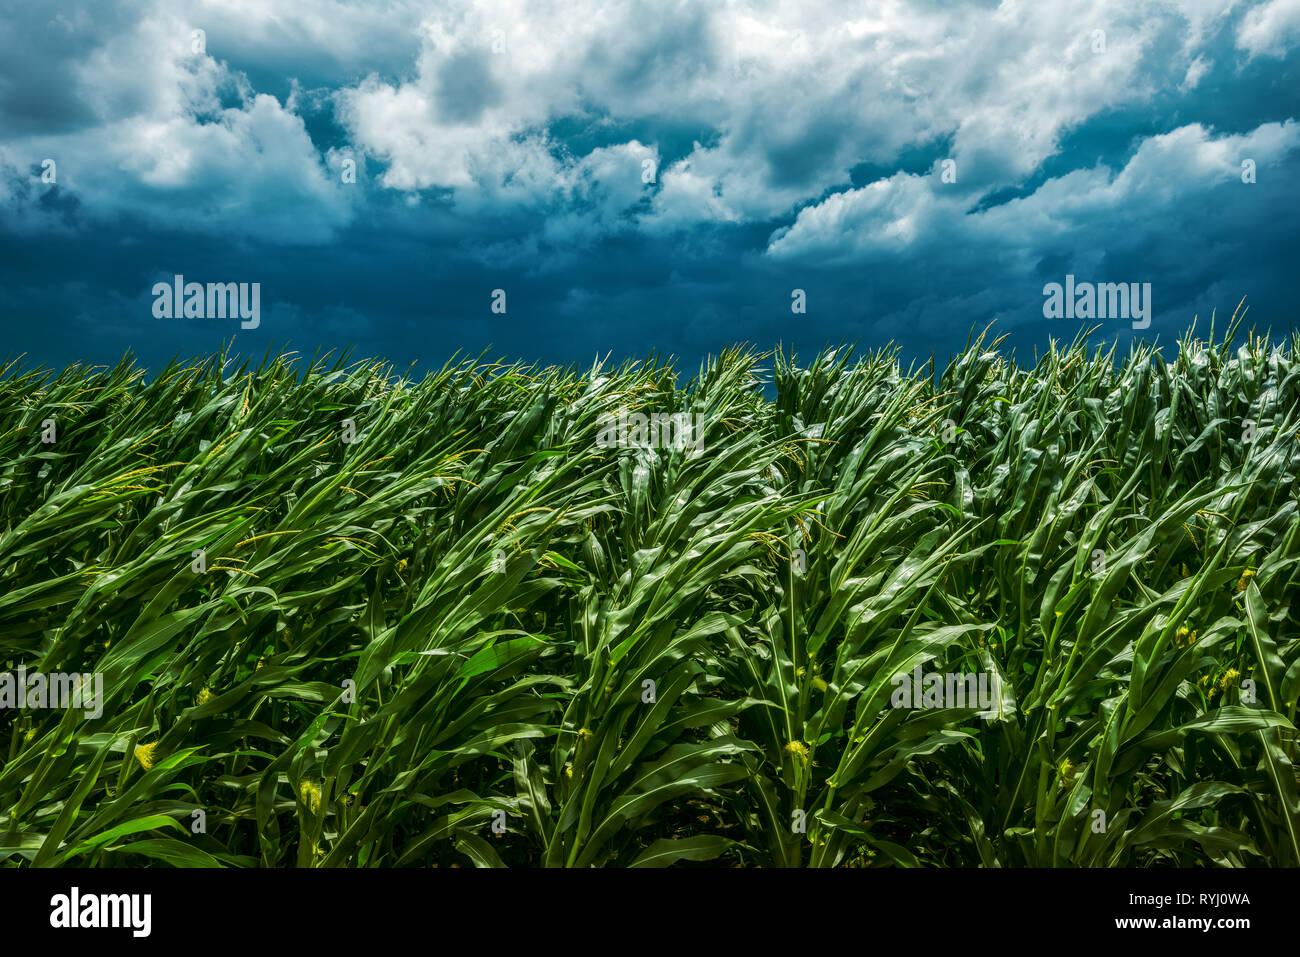 Campo de maíz y cielo tormentoso, el viento sopla fuerte y doblar las plantas en el paisaje cultivado Foto de stock